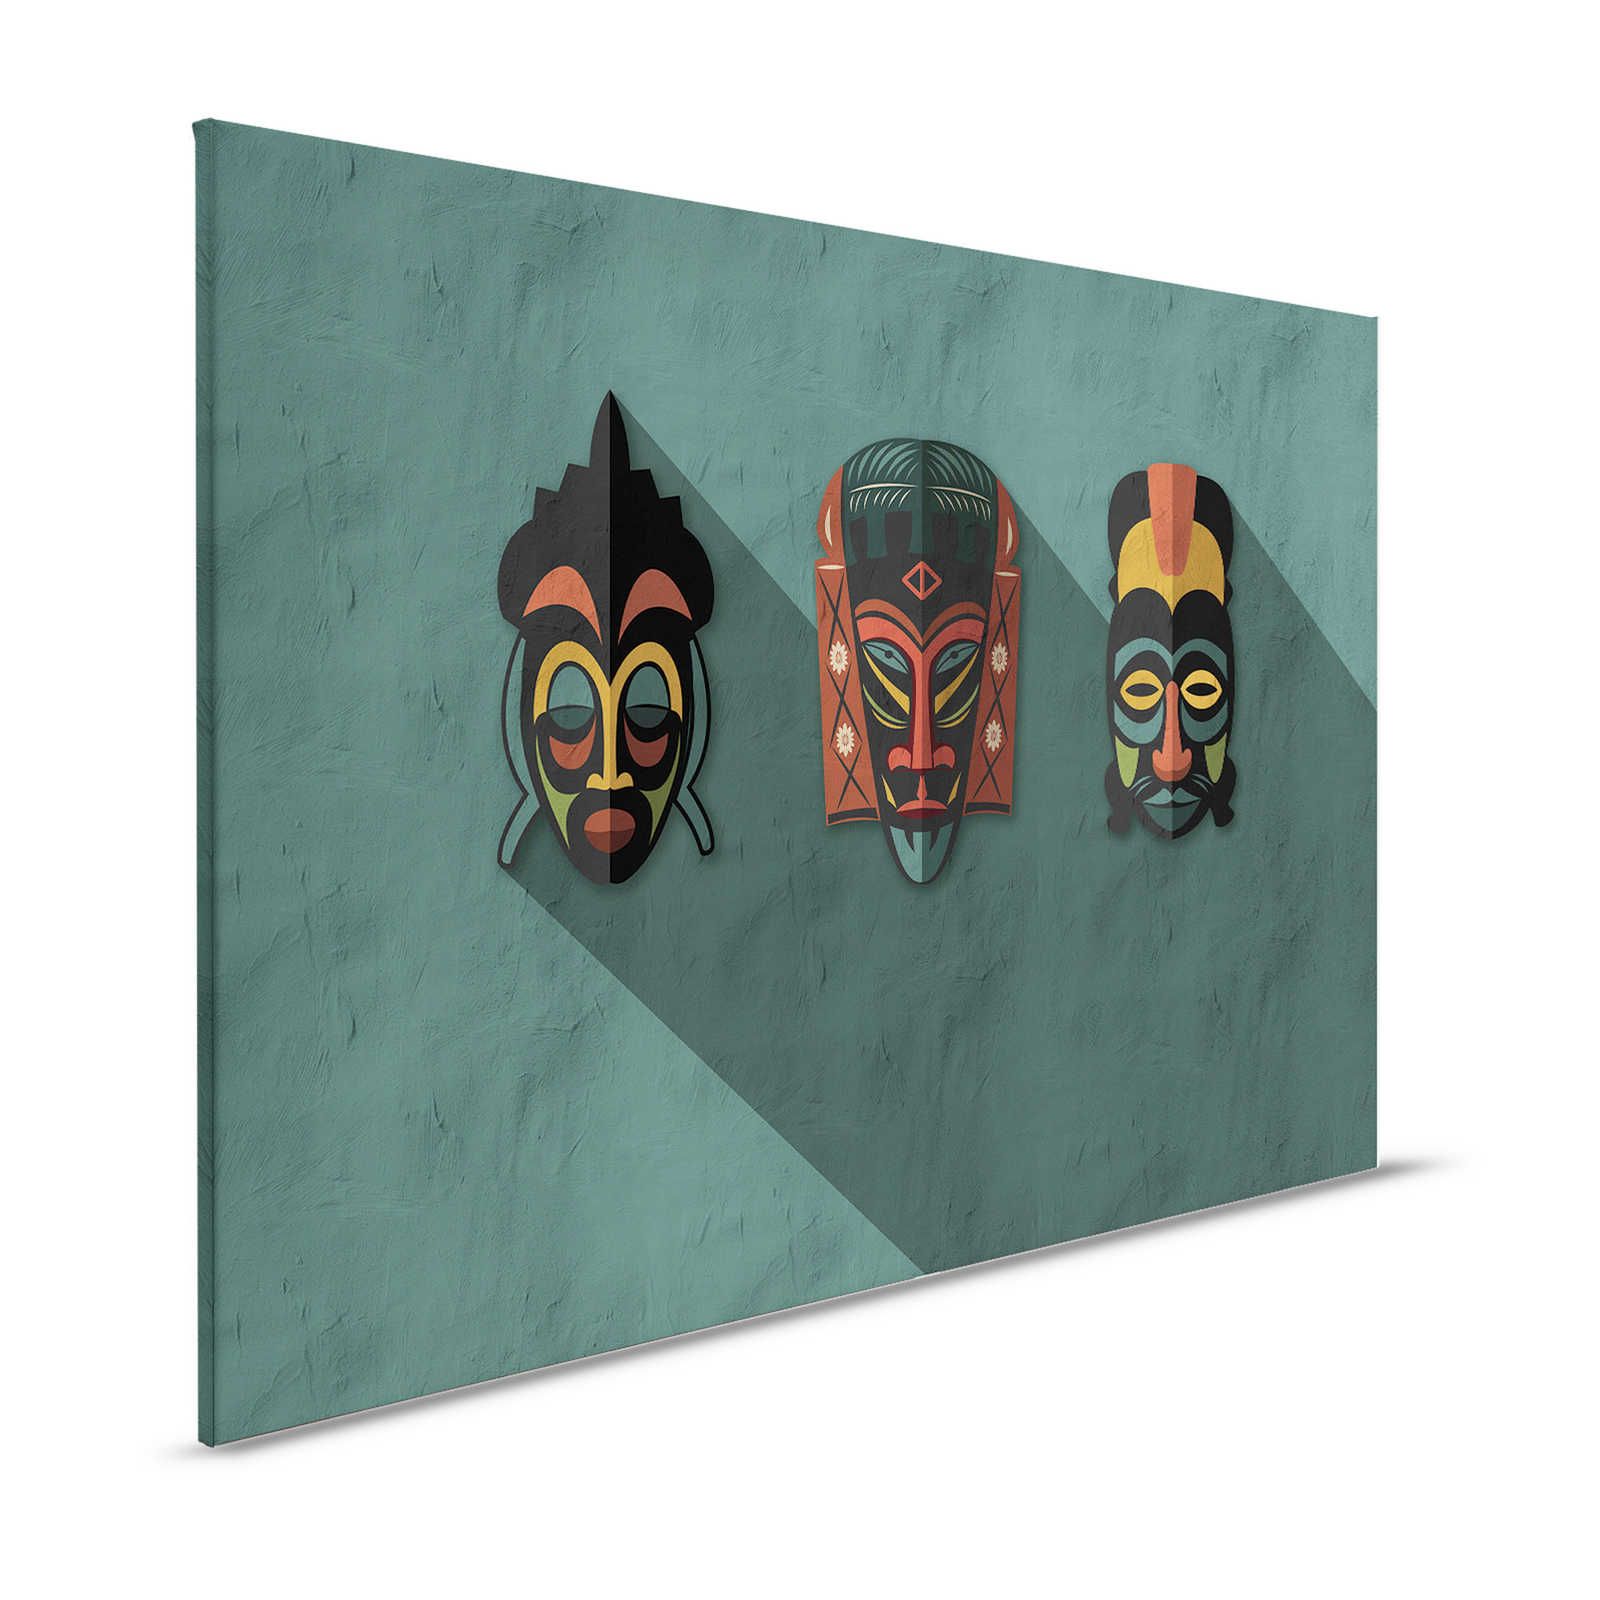 Zulu 3 - Toile Petrol Africa Masks Zulu Style - 1,20 m x 0,80 m
